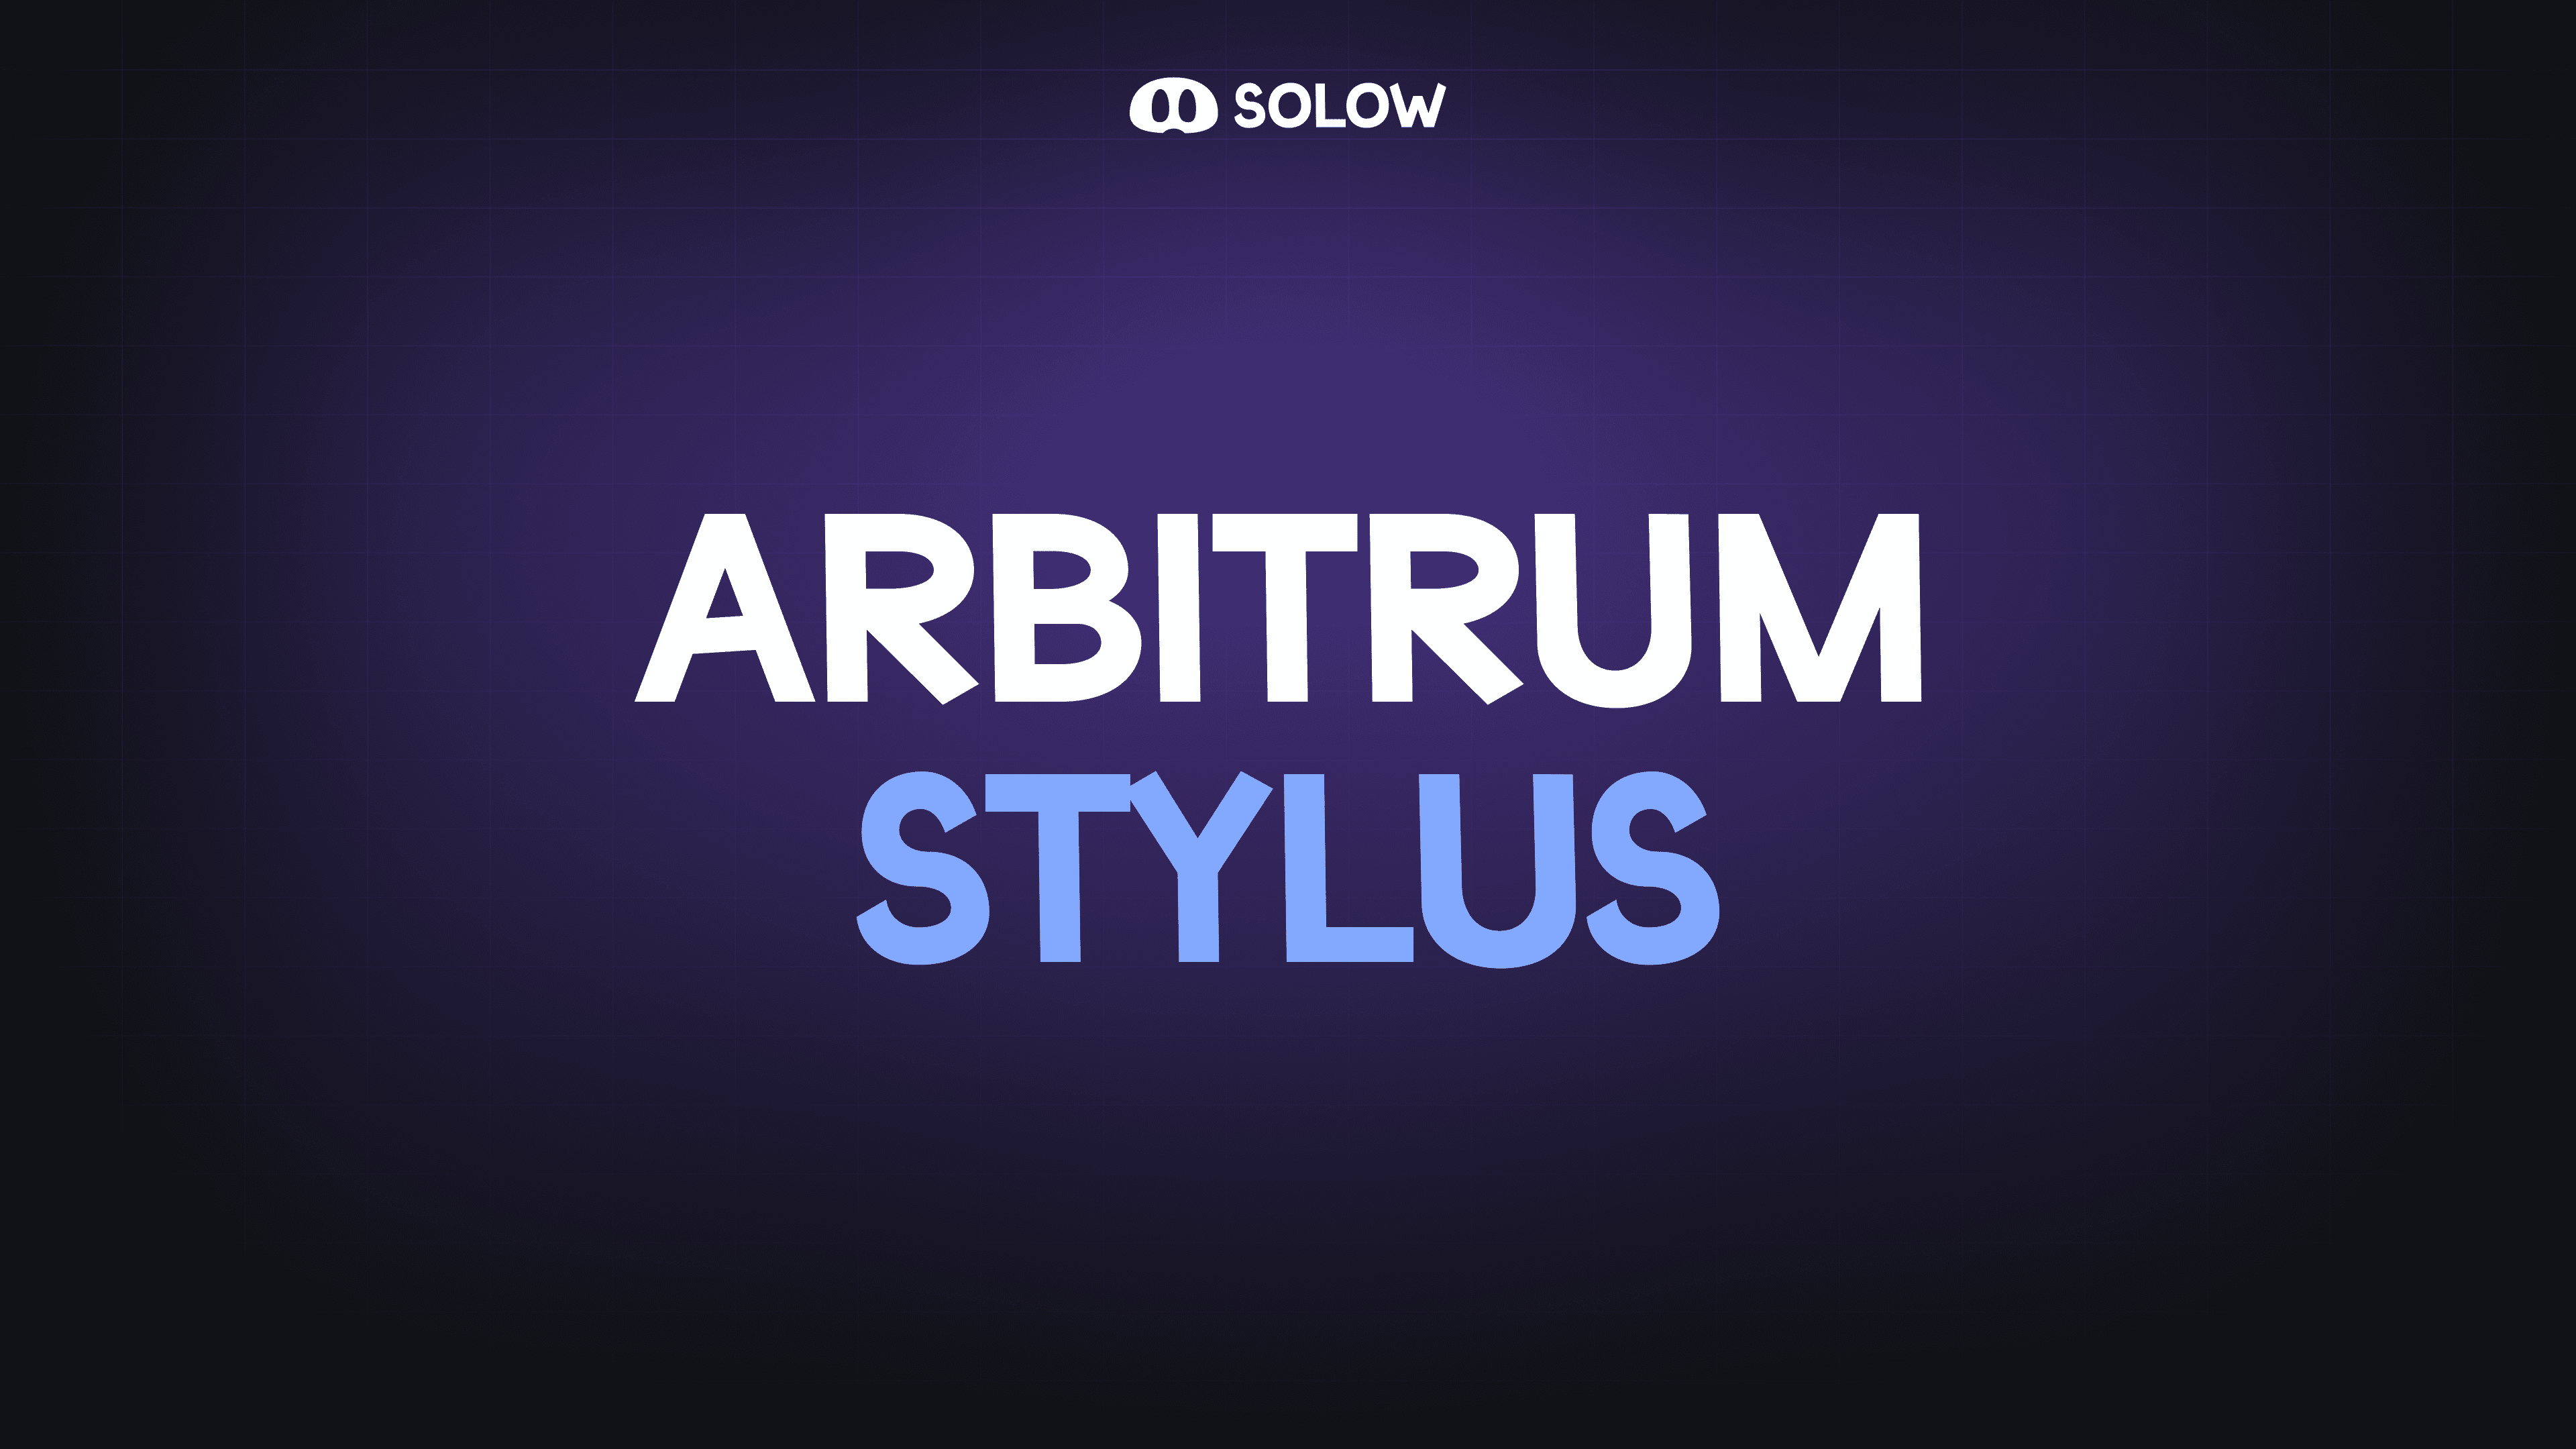 Arbitrum Stylus